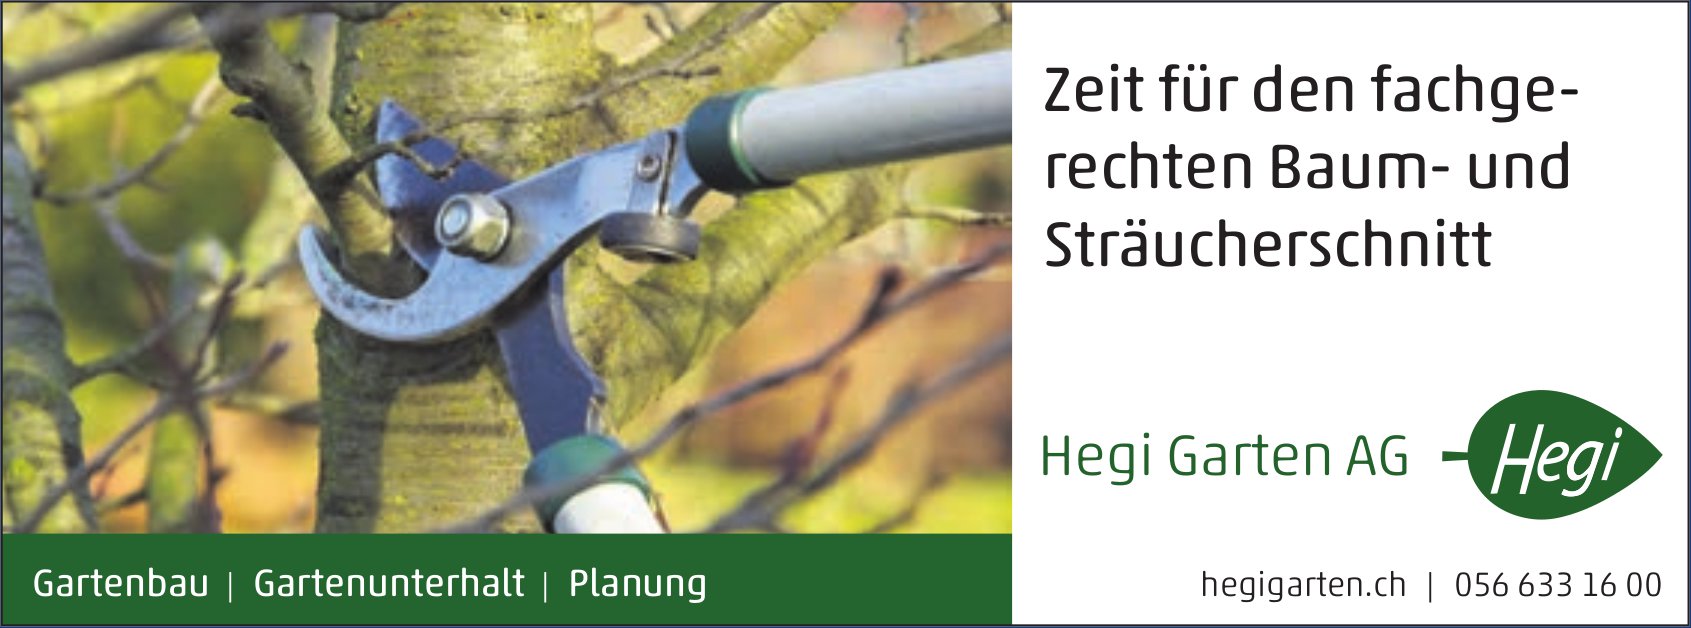 Hegi Garten AG, Zeit für den fachgerechten Baum- und Sträucherschnitt